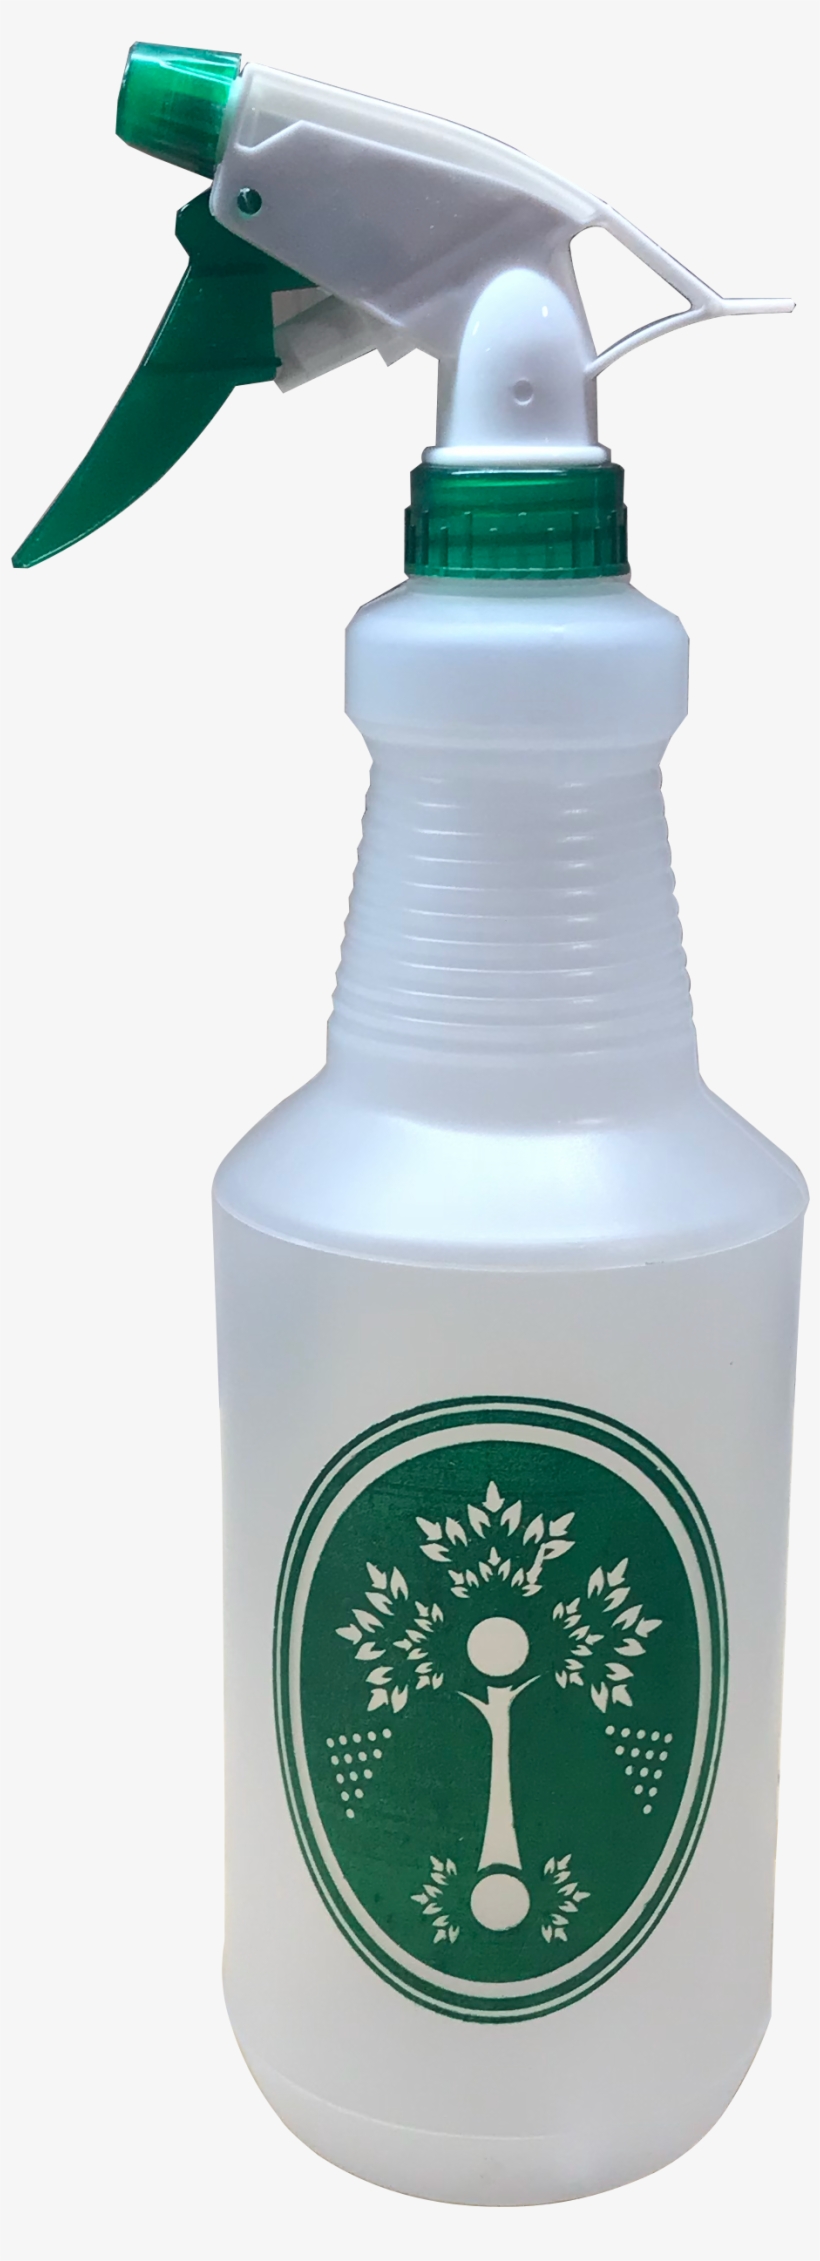 Spray Bottle - Plastic Bottle, transparent png #8789144